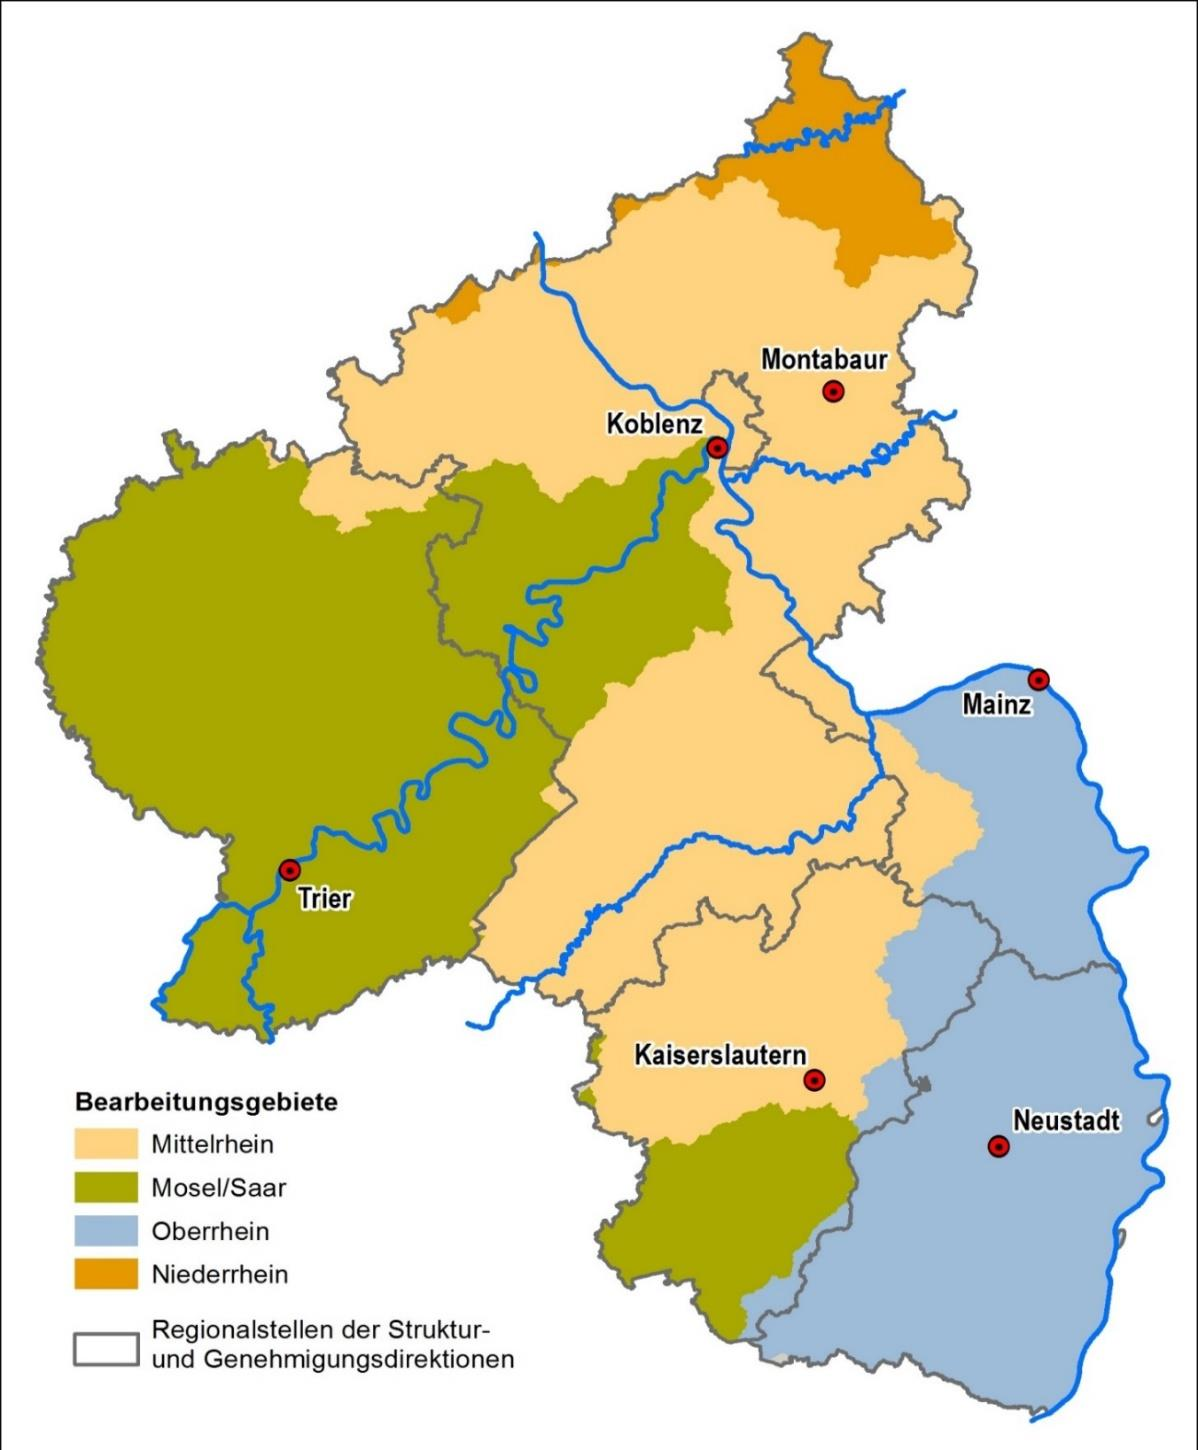 Rheinland-Pfalz liegt mit seiner Landesfläche vollständig innerhalb der internationalen Flussgebietseinheit Rhein (Abbildung 4).